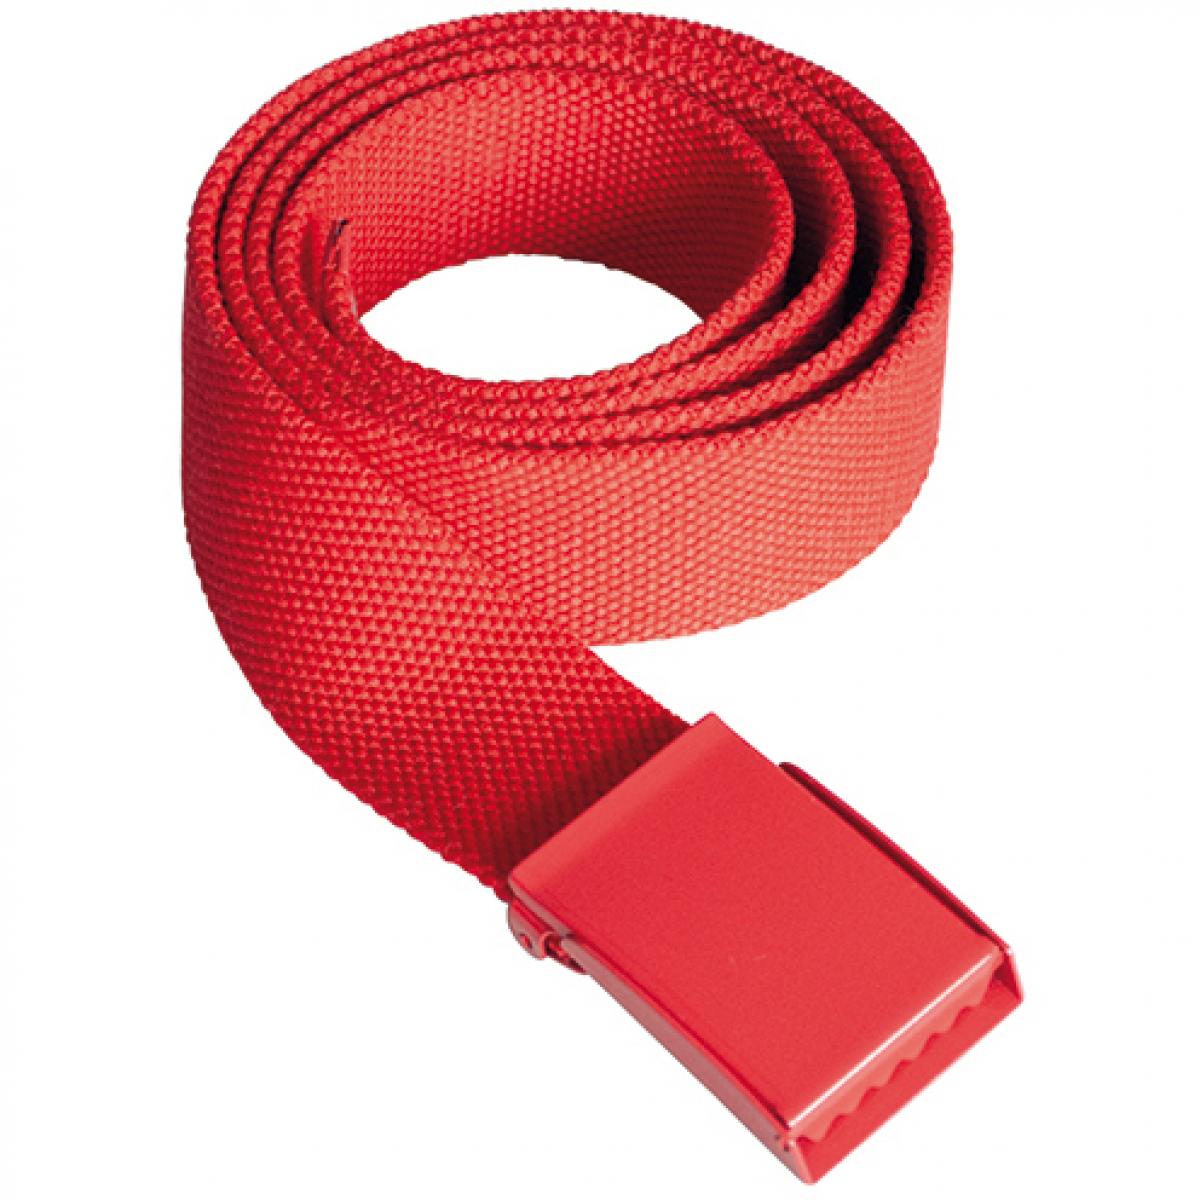 Hersteller: Korntex Herstellernummer: KXPYB Artikelbezeichnung: Polyestergürtel, Breite: 4 cm, Länge inkl. Schnalle: 130 cm Farbe: Red